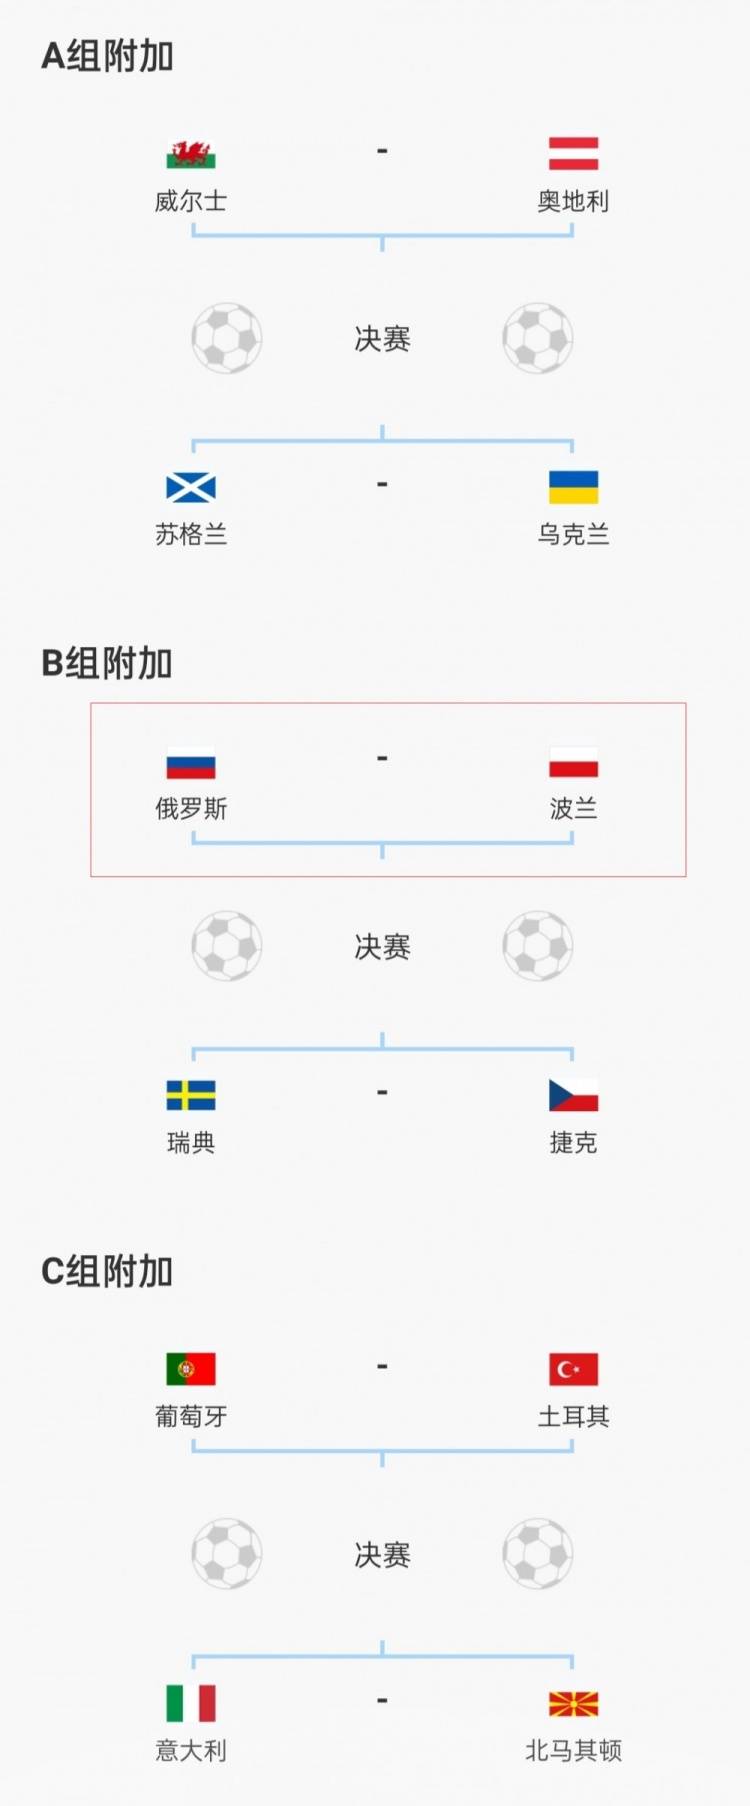 附加赛|官方：俄罗斯国家队&俱乐部禁止参加所有赛事